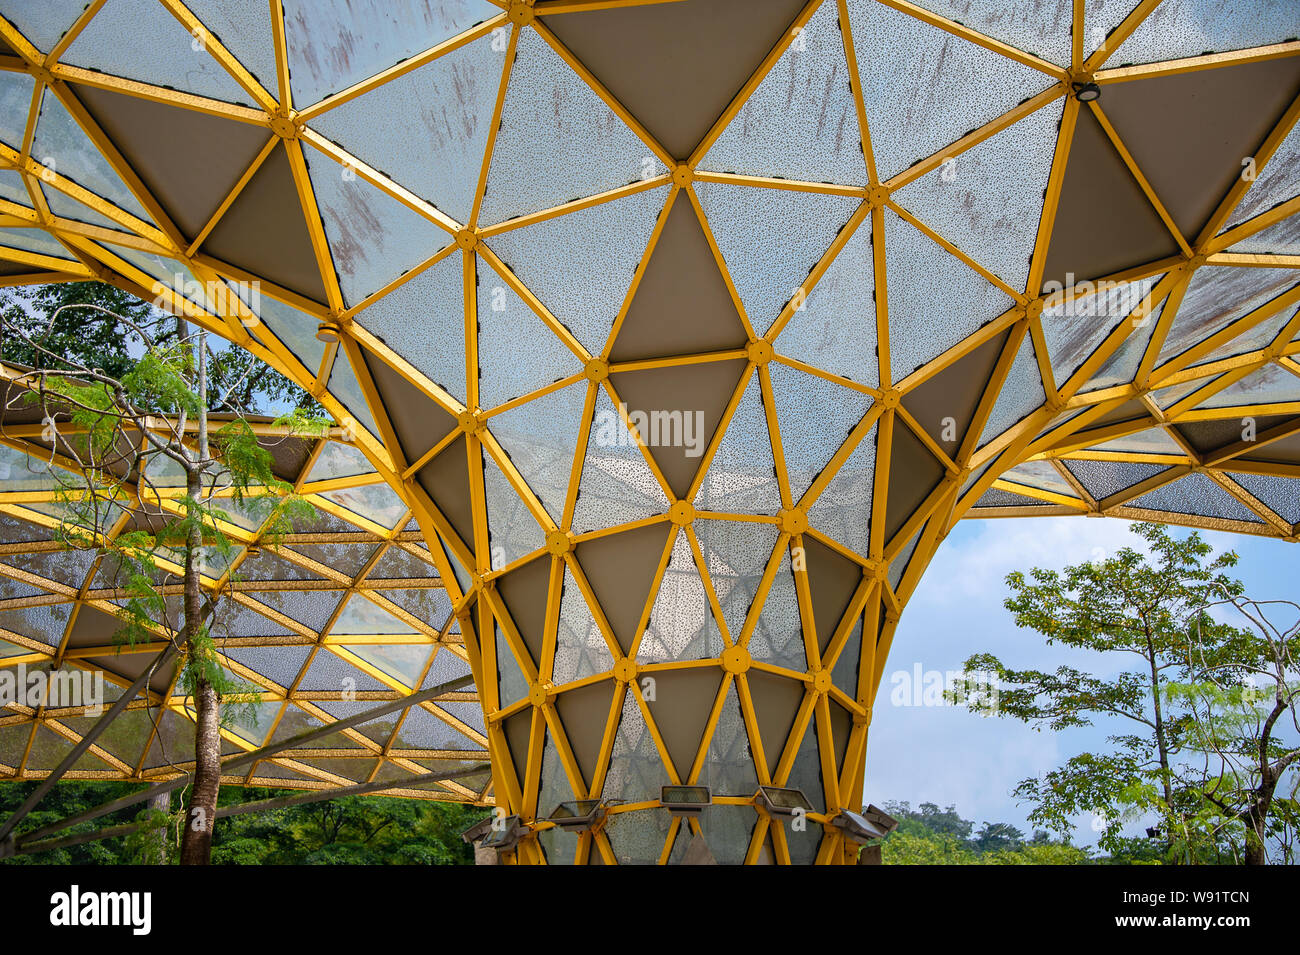 La canopée Perdana, une structure unique de conception géométrique moderne. se fond dans la nature dans le Jardin botanique de Perdana Kuala Lumpur, Malaisie Banque D'Images